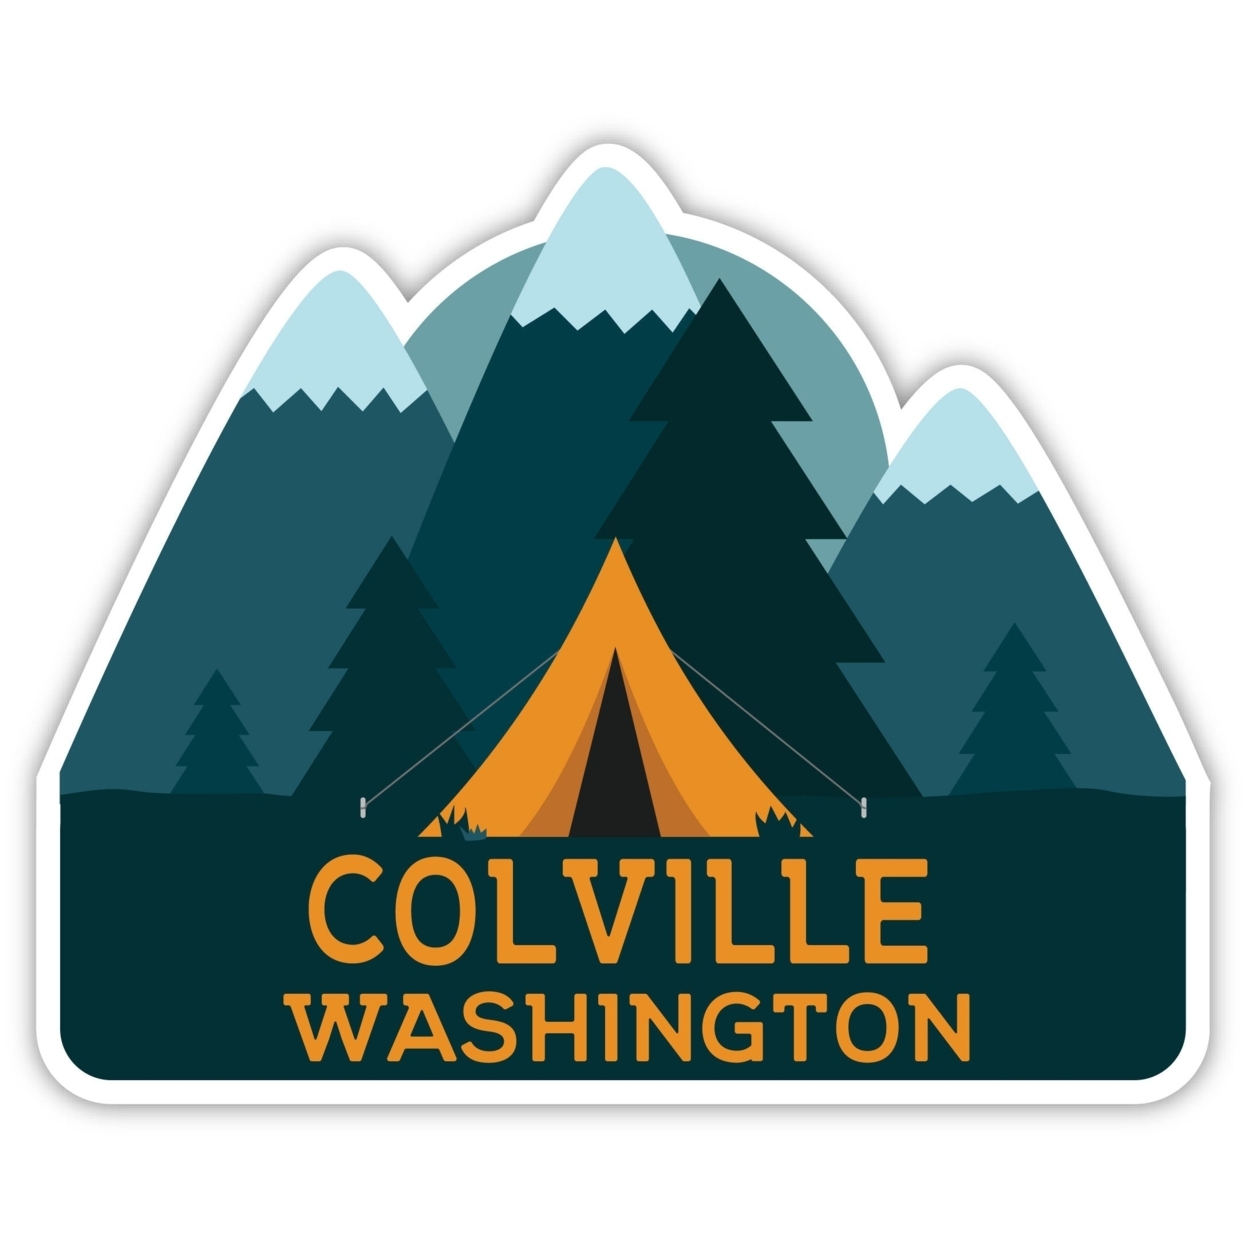 Colville Washington Souvenir Decorative Stickers (Choose Theme And Size) - Single Unit, 12-Inch, Tent